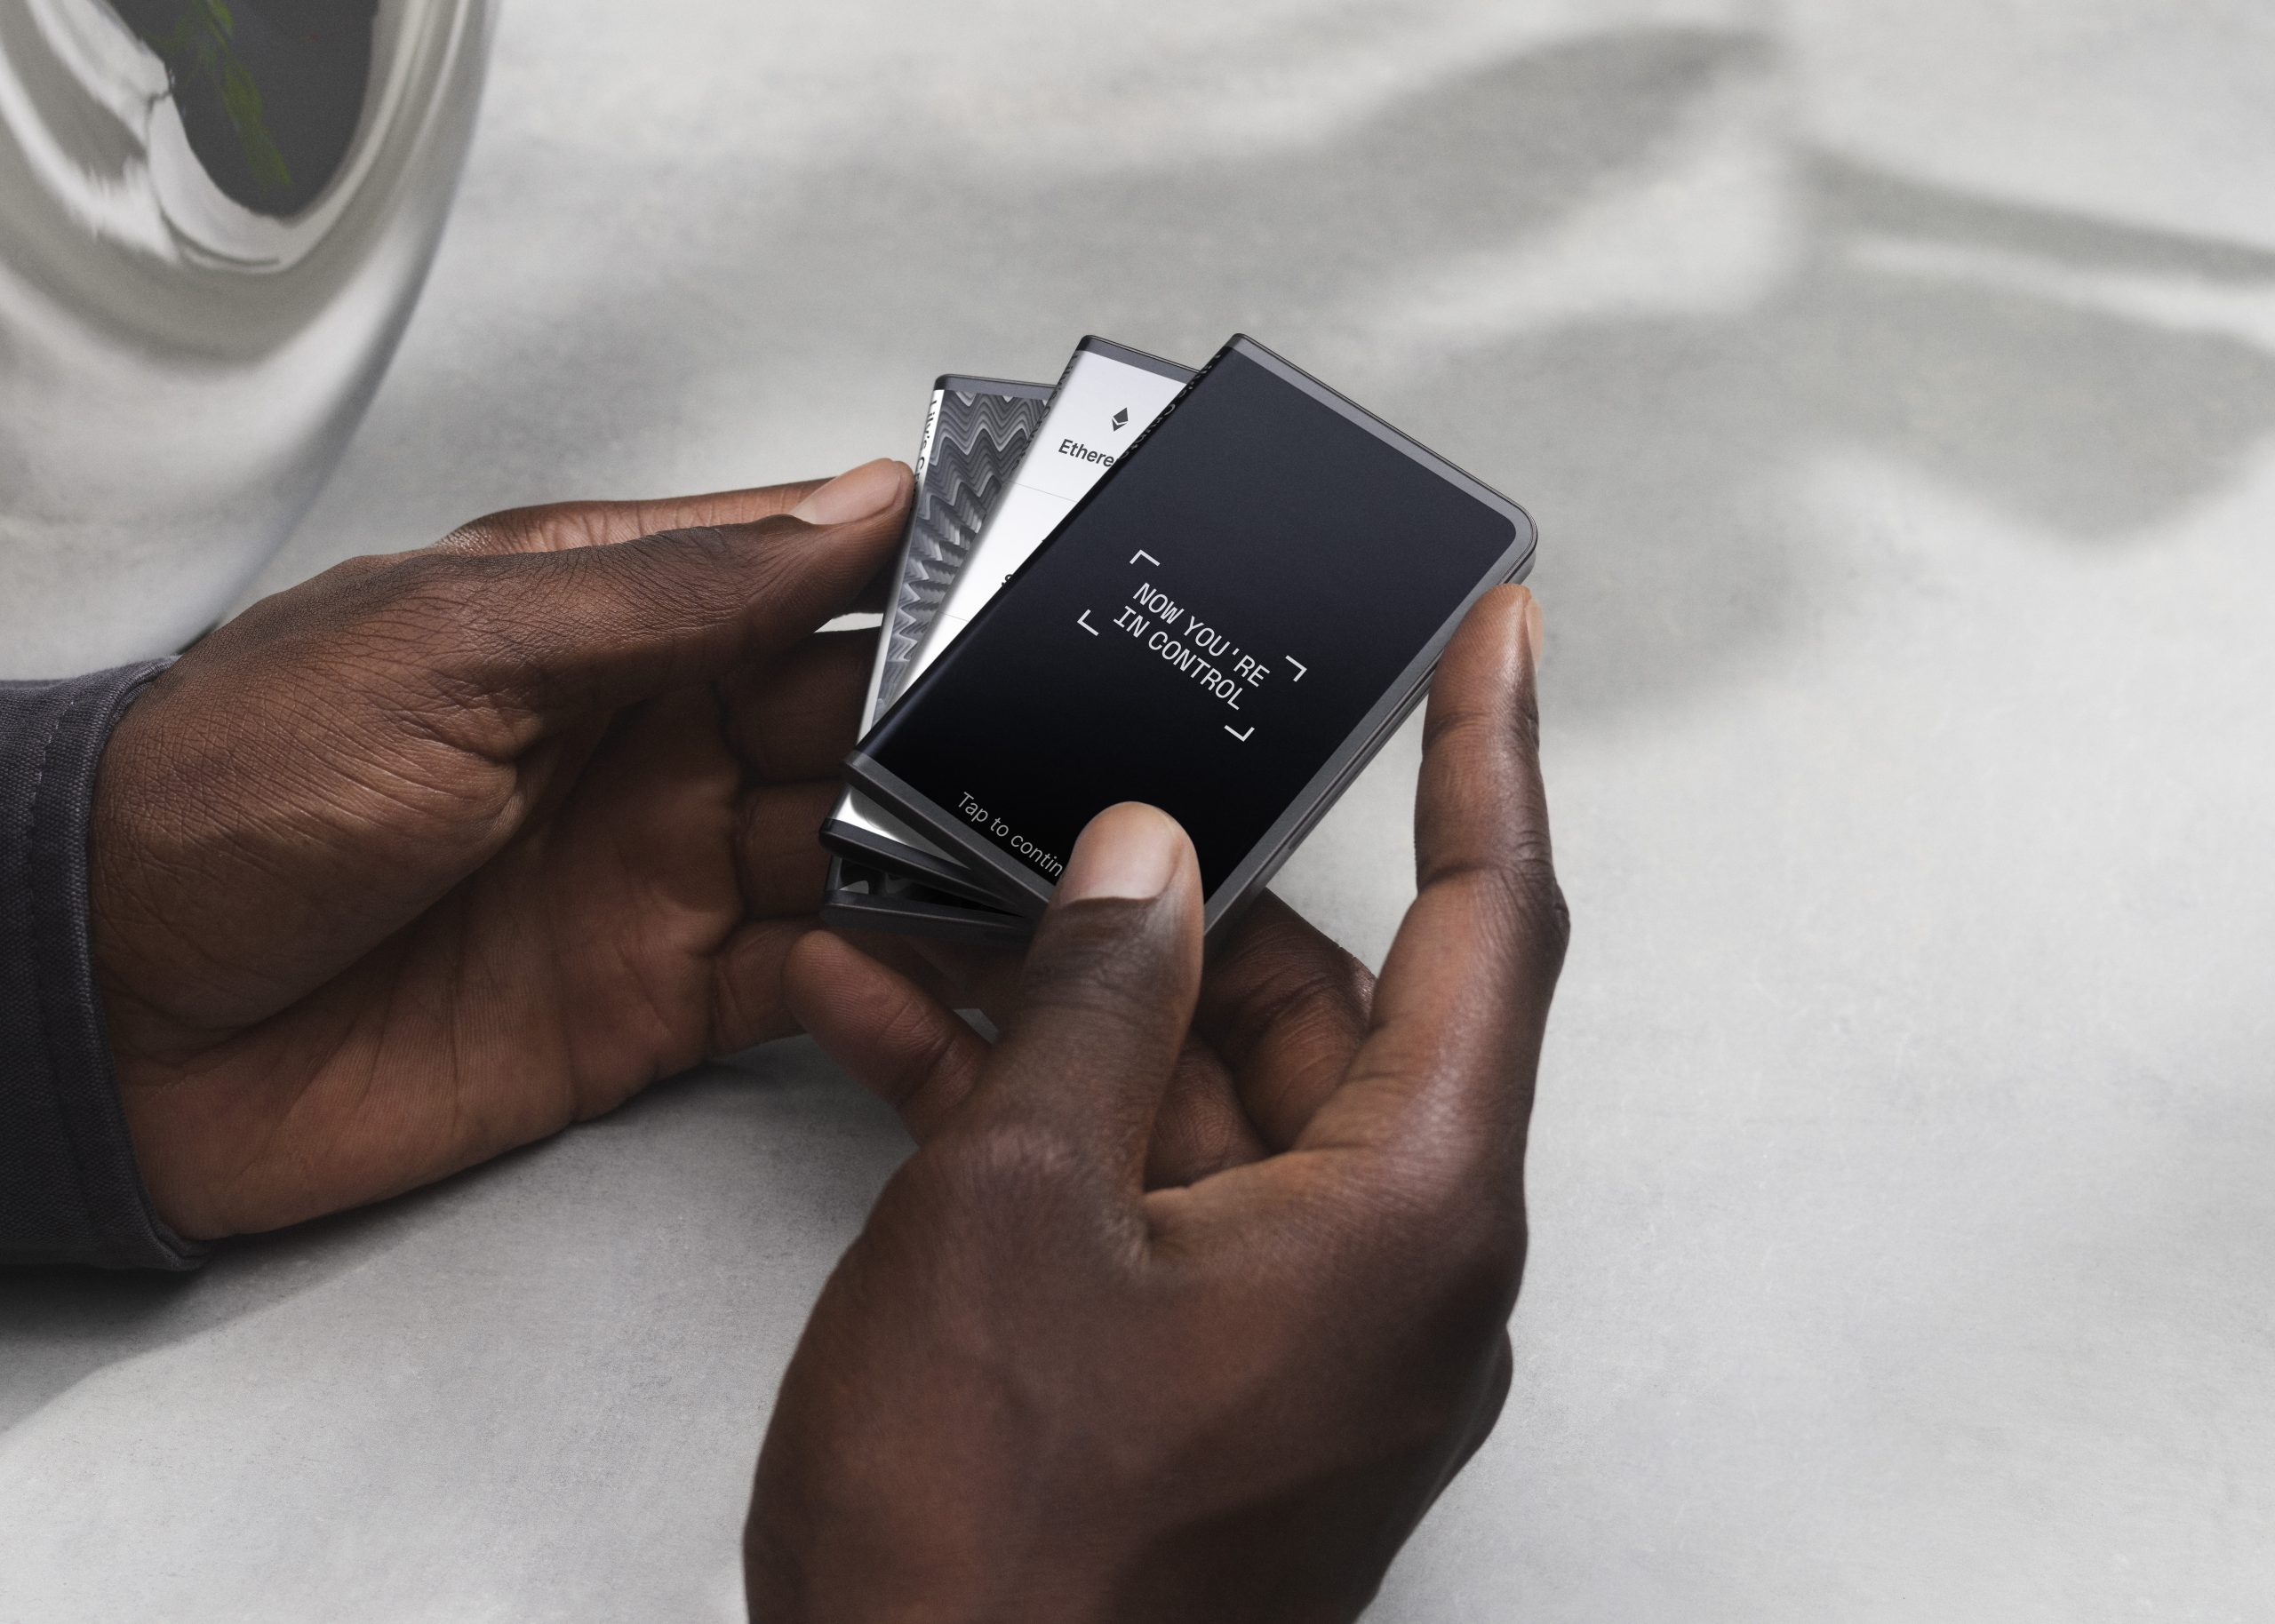 Ledger tiết lộ ví phần cứng tiền điện tử mới được thiết kế bởi người tạo ra Ipod Tony Fadell